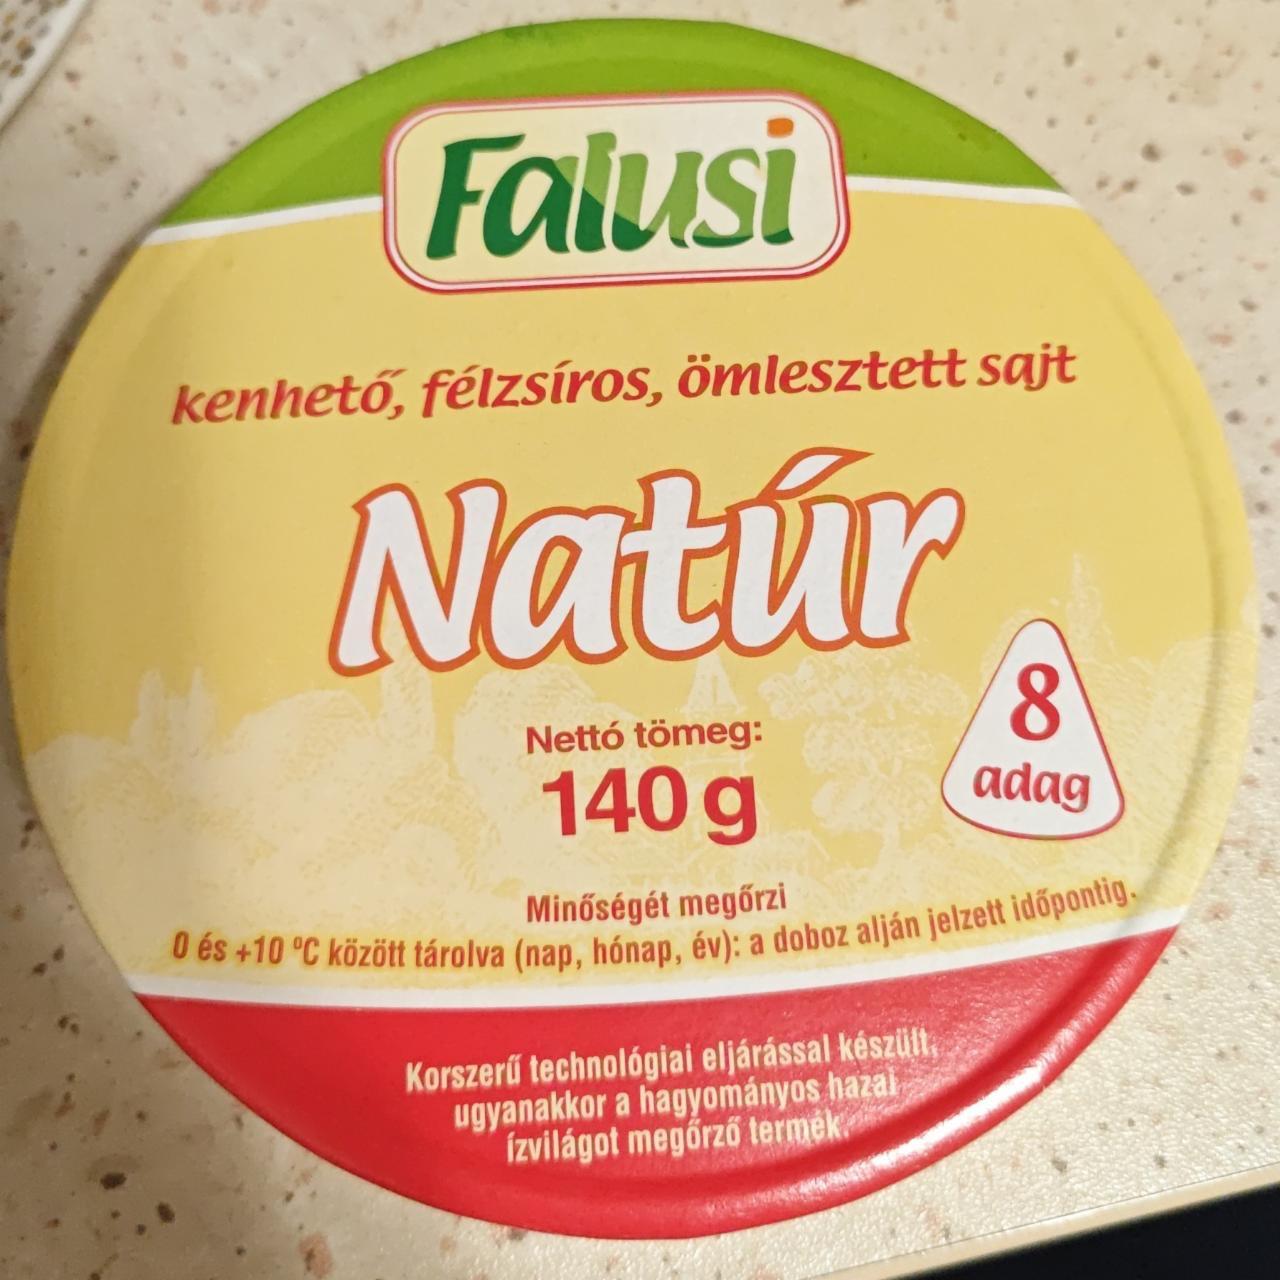 Képek - Natúr ömlesztett sajt Falusi